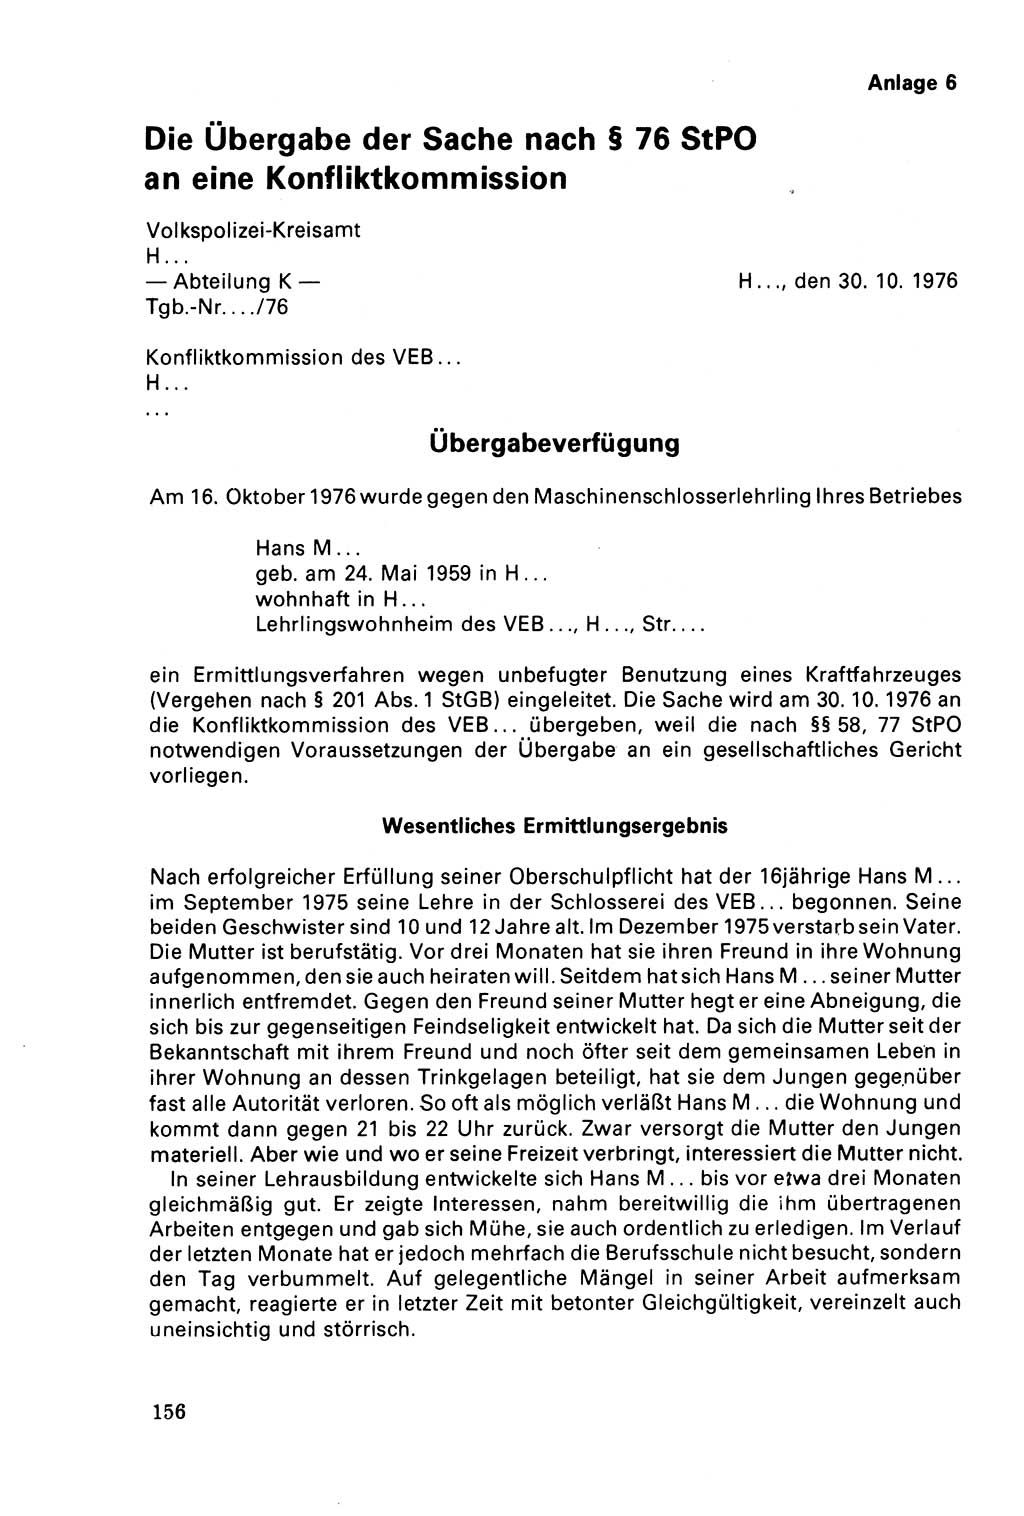 Der Abschluß des Ermittlungsverfahrens [Deutsche Demokratische Republik (DDR)] 1978, Seite 156 (Abschl. EV DDR 1978, S. 156)